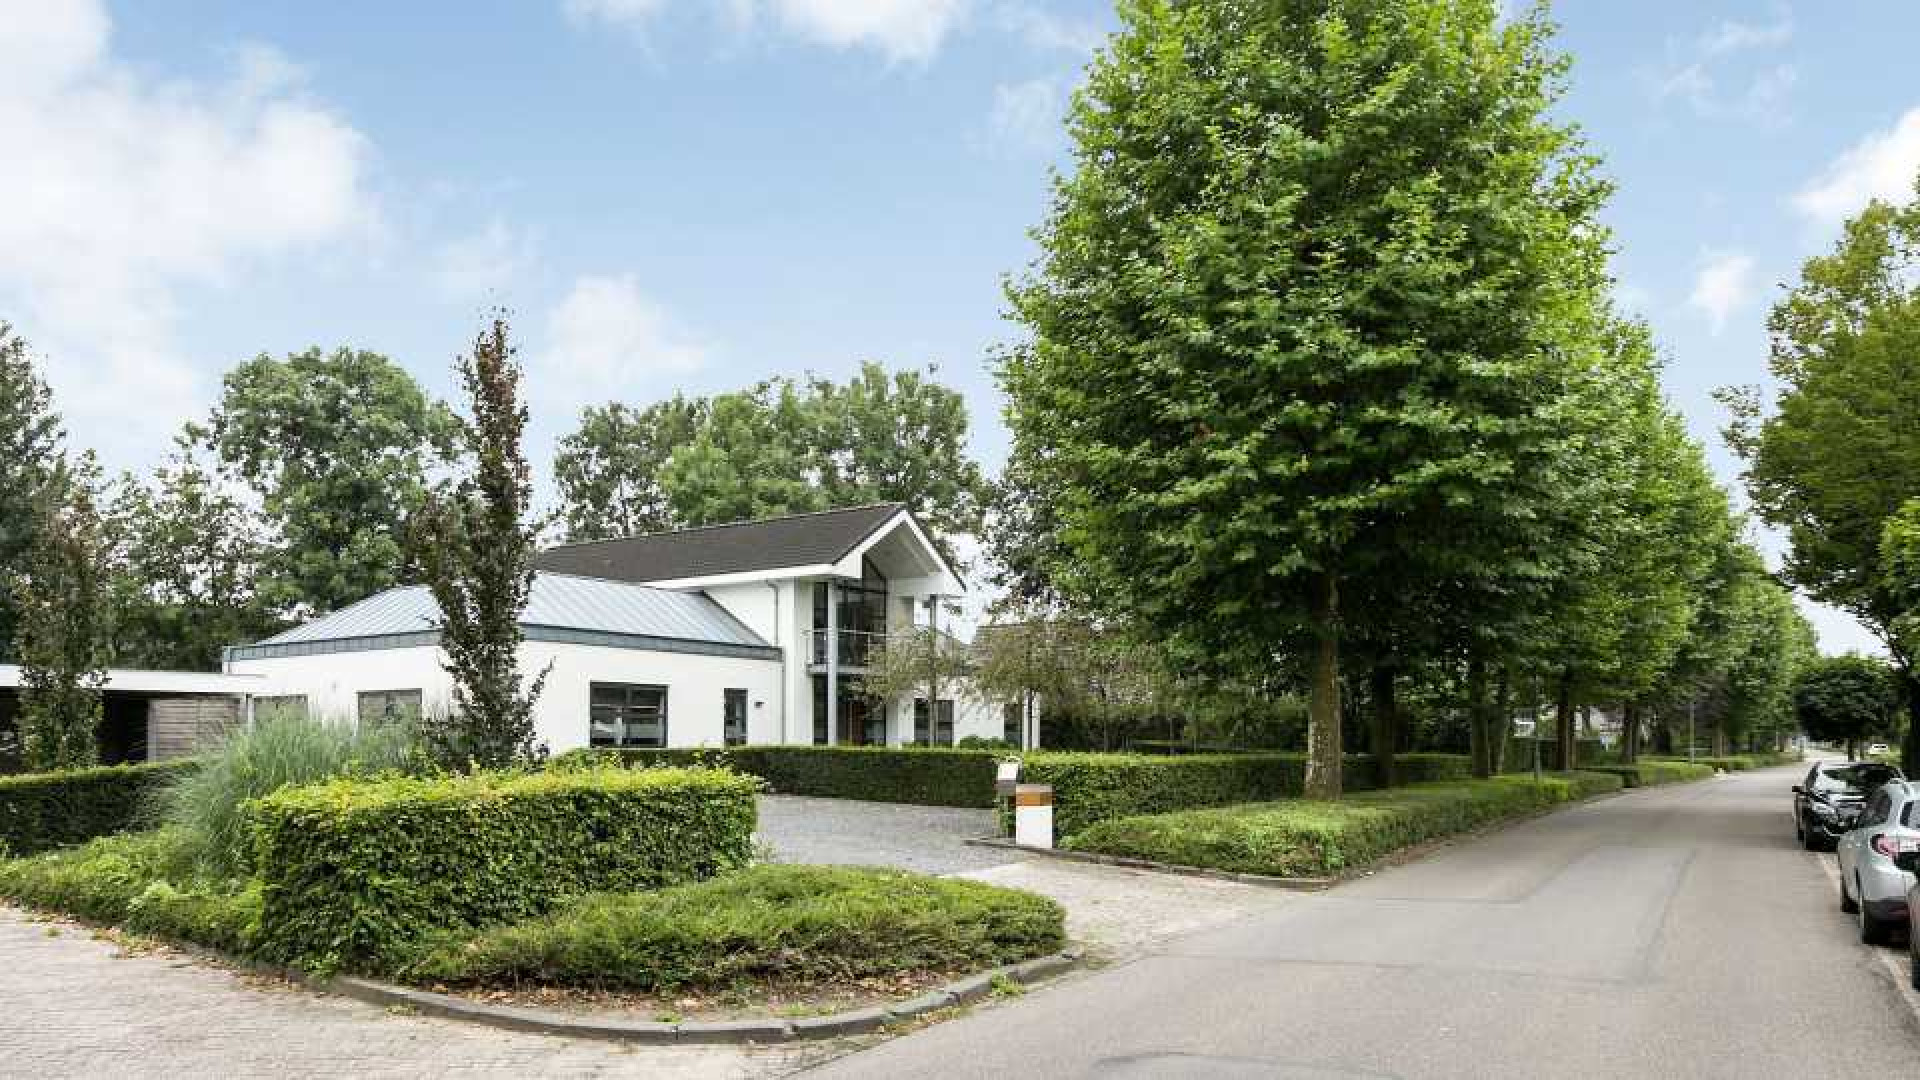 Jochem van Gelder zet zijn villa in het Land van Maas en Waal te koop. Zie foto's 1